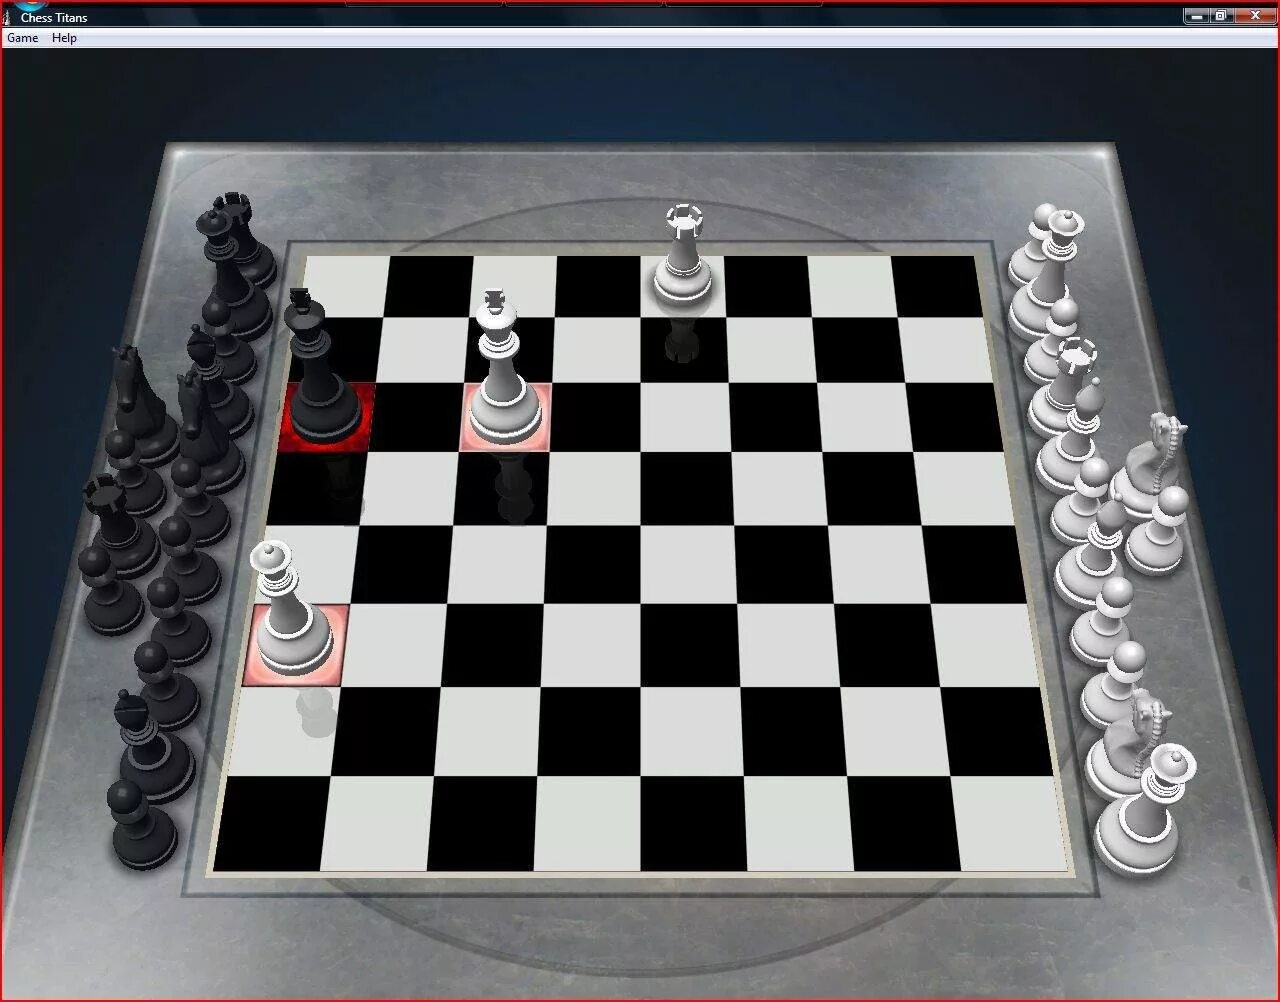 Шахматная доска на экране компьютера. Игра шахматы Chess Titans. Шахматы для виндовс Chess Titans. Шахматный дебют е4 с5. Шахматы Windows 8 Chess Titans.